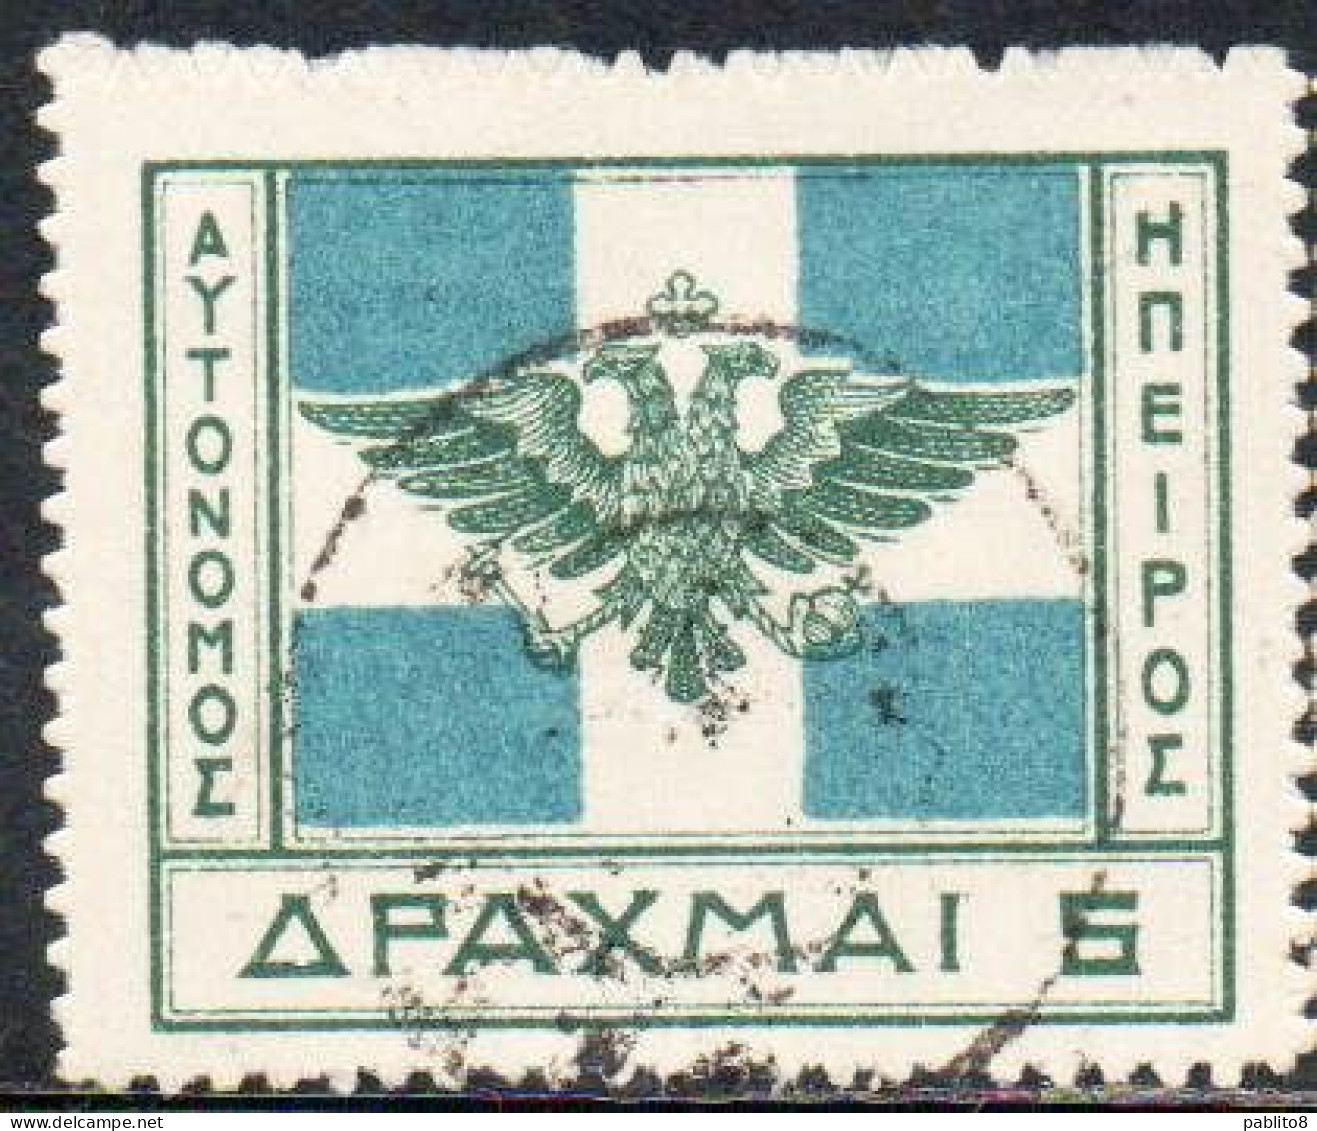 GREECE GRECIA HELLAS EPIRUS EPIRO 1914 ARMS FLAG 5d USED USATO OBLITERE' - Nordepirus